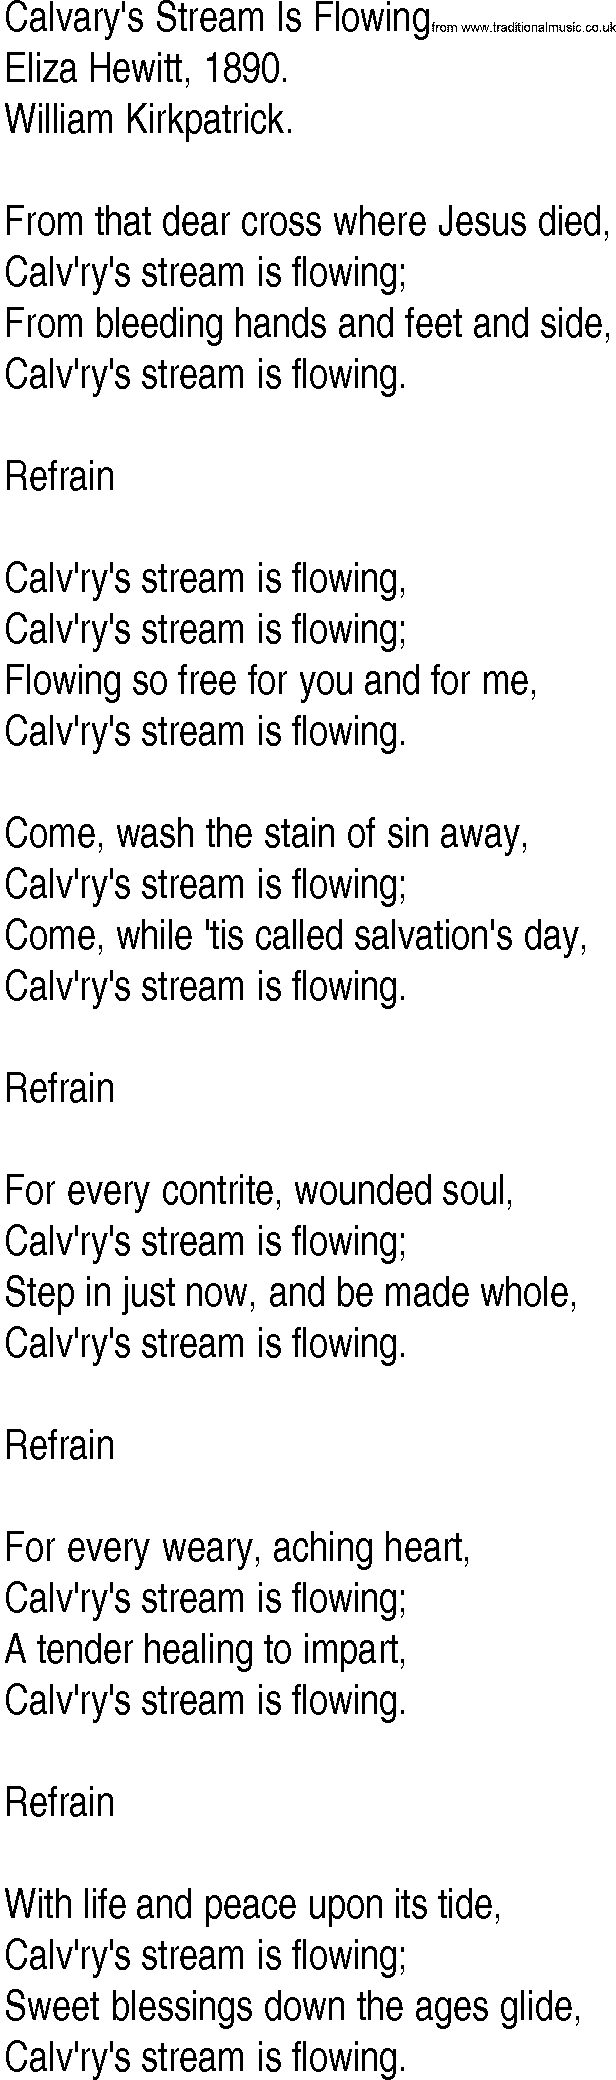 Hymn and Gospel Song: Calvary's Stream Is Flowing by Eliza Hewitt lyrics